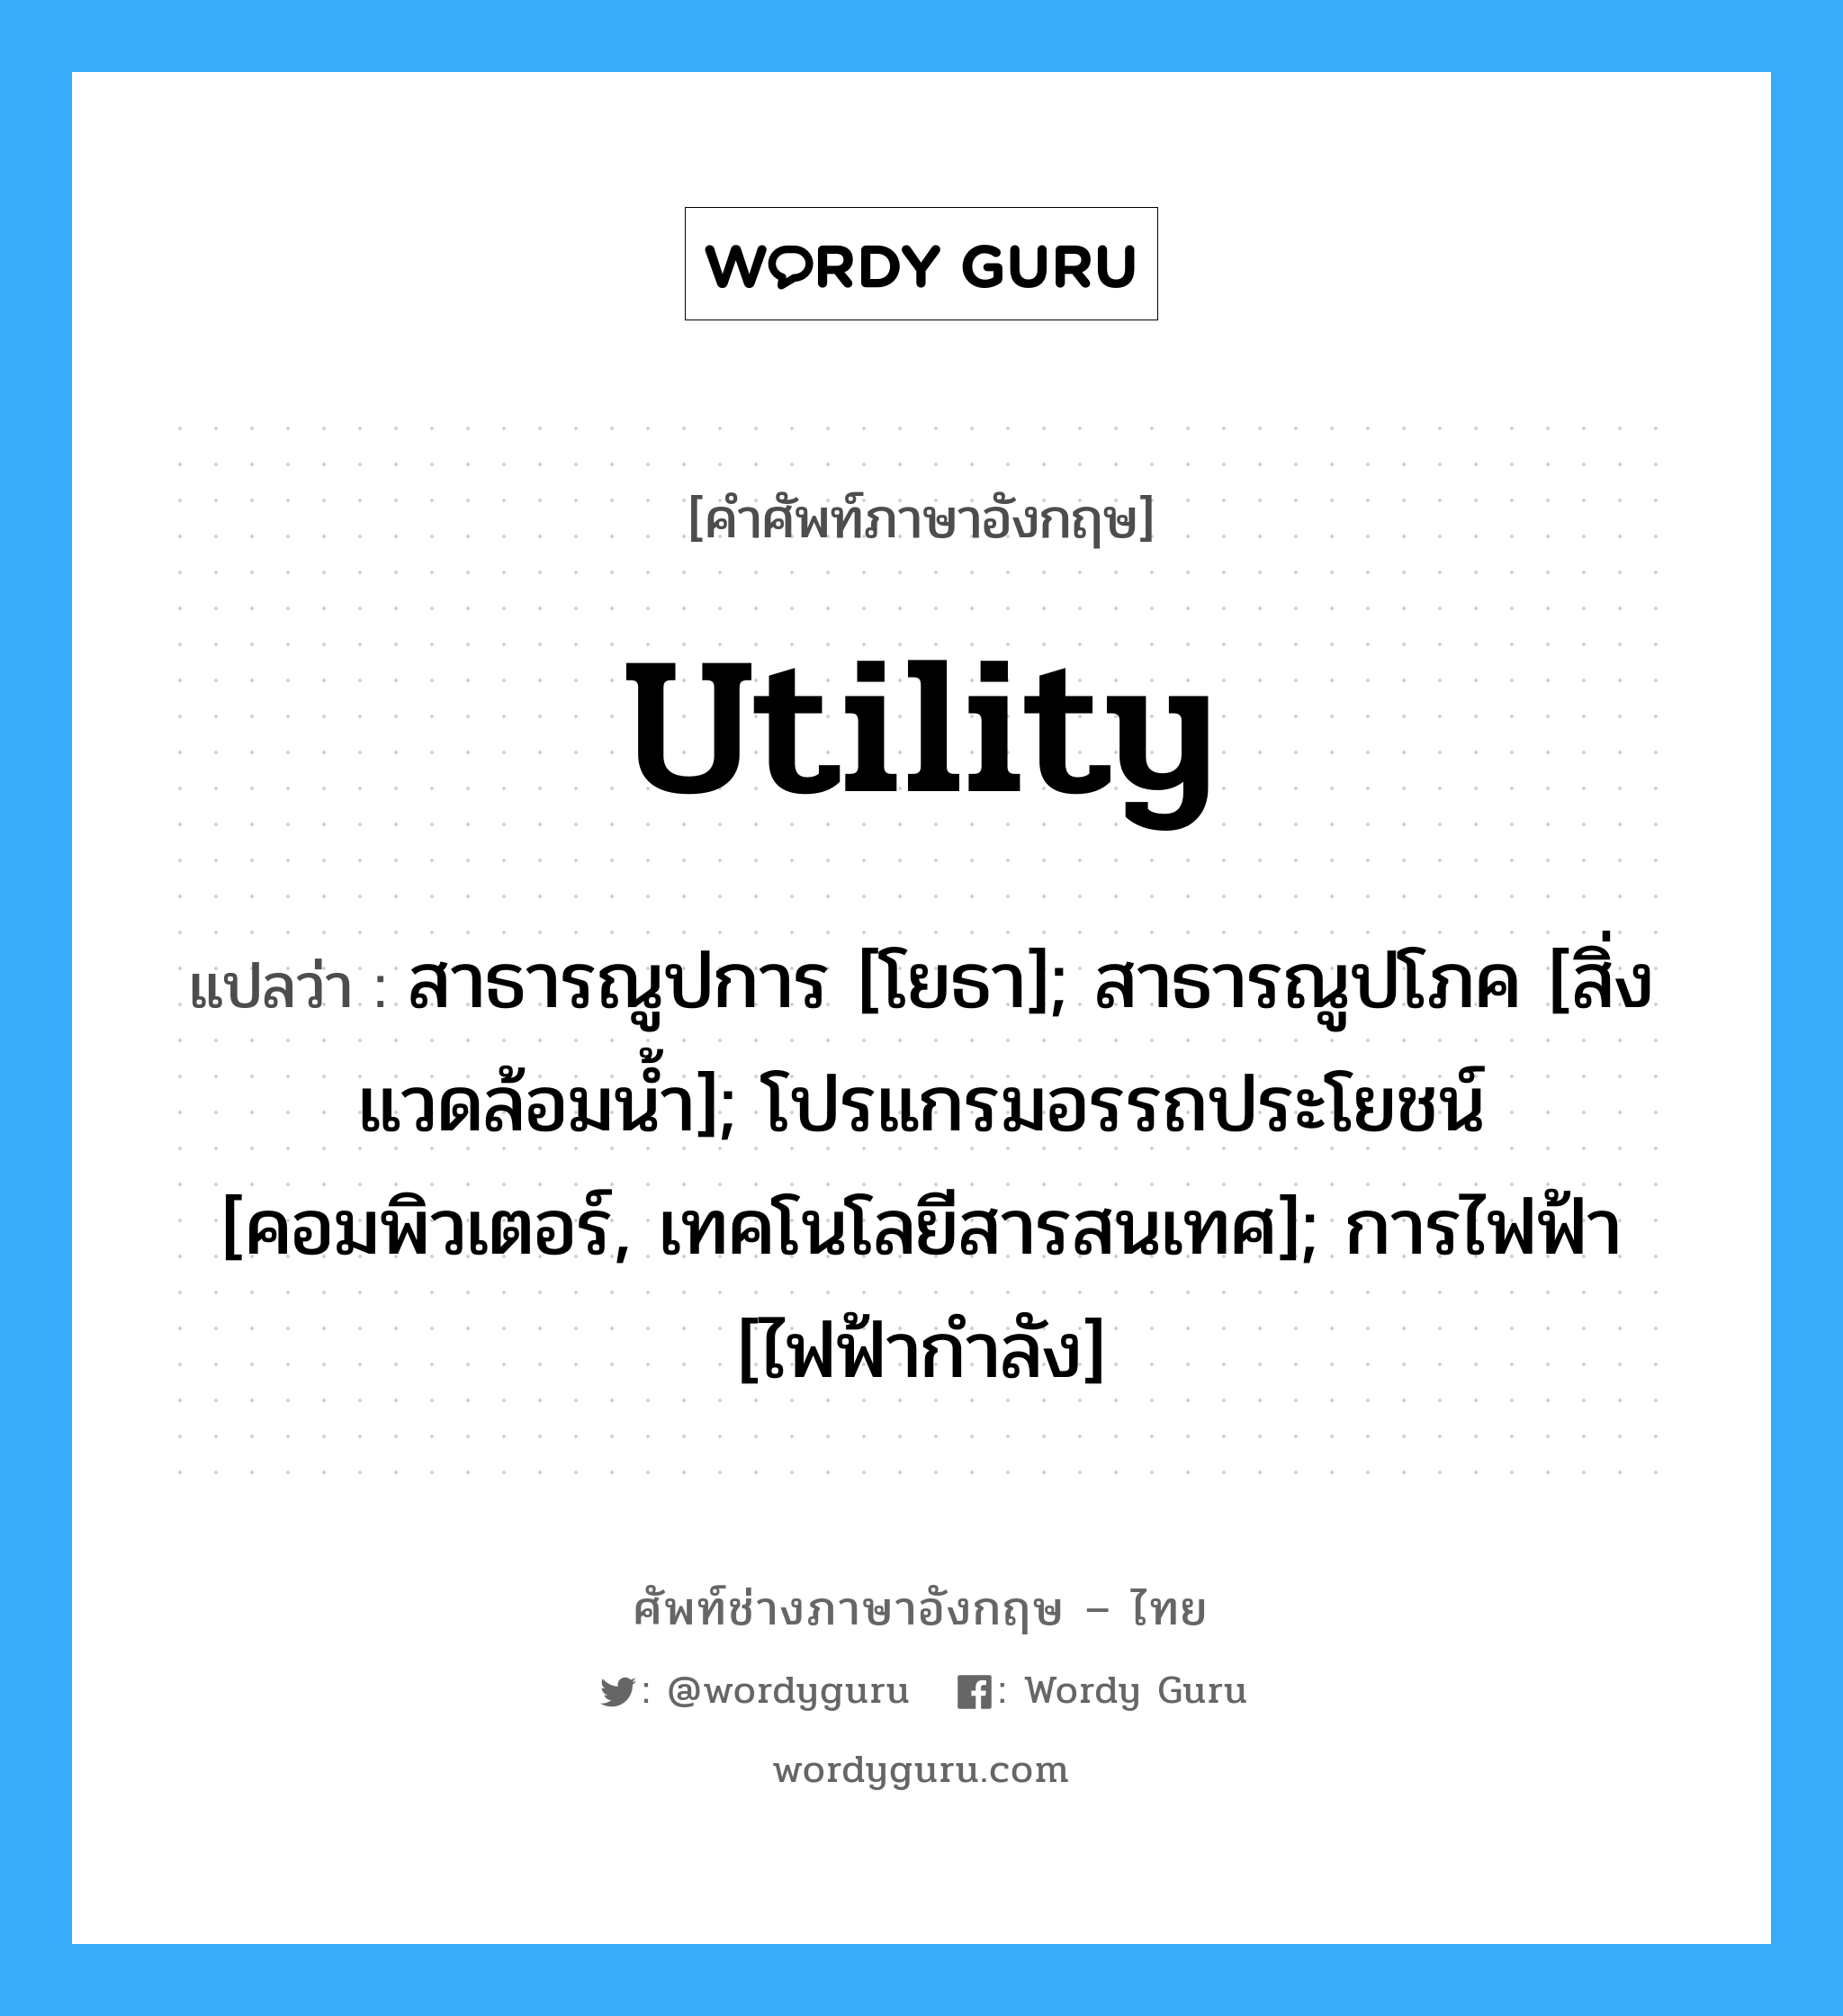 utility แปลว่า?, คำศัพท์ช่างภาษาอังกฤษ - ไทย utility คำศัพท์ภาษาอังกฤษ utility แปลว่า สาธารณูปการ [โยธา]; สาธารณูปโภค [สิ่งแวดล้อมน้ำ]; โปรแกรมอรรถประโยชน์ [คอมพิวเตอร์, เทคโนโลยีสารสนเทศ]; การไฟฟ้า [ไฟฟ้ากำลัง]